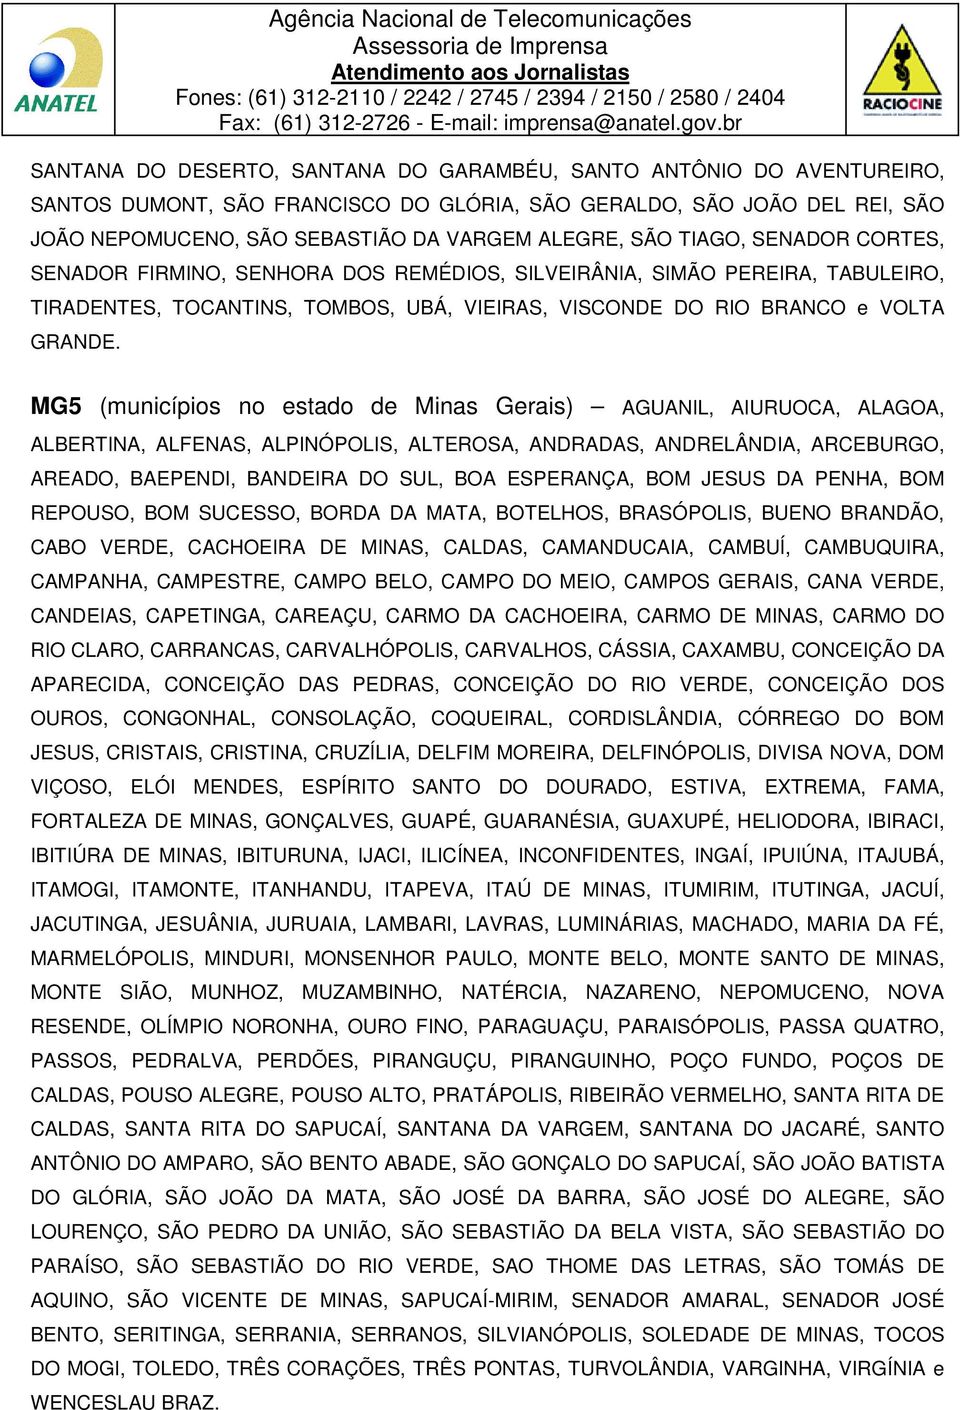 MG5 (municípios no estado de Minas Gerais) AGUANIL, AIURUOCA, ALAGOA, ALBERTINA, ALFENAS, ALPINÓPOLIS, ALTEROSA, ANDRADAS, ANDRELÂNDIA, ARCEBURGO, AREADO, BAEPENDI, BANDEIRA DO SUL, BOA ESPERANÇA,